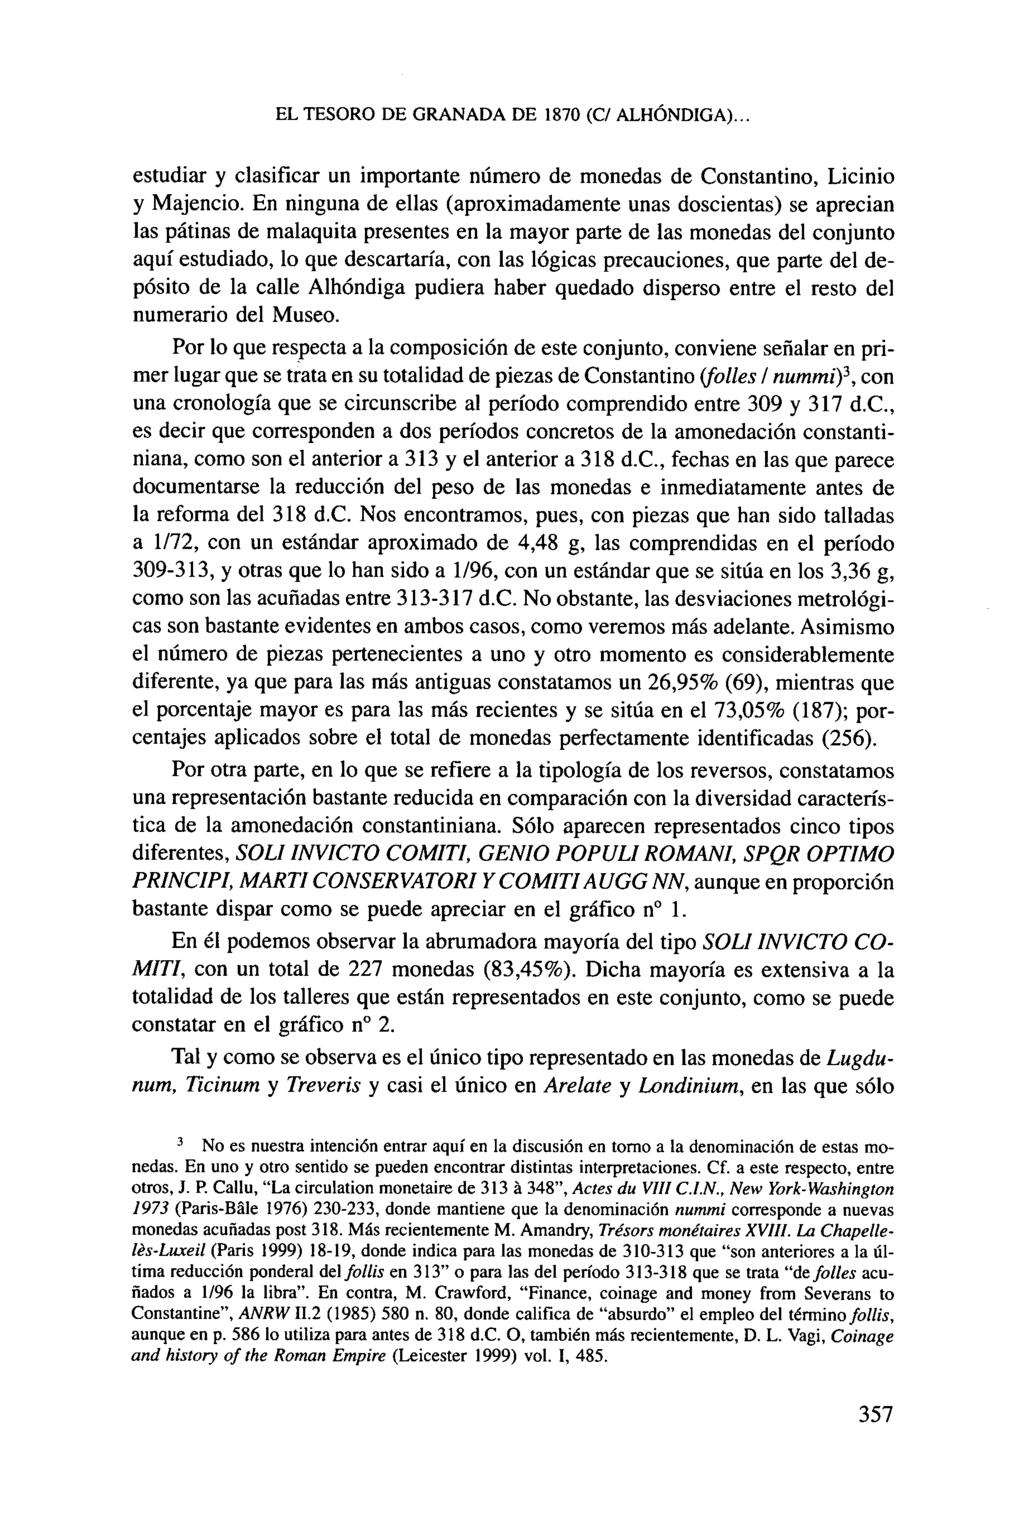 EL TESORO DE GRANADA DE 1870 (C/ ALHÓNDIGA)... estudiar y clasificar un importante número de monedas de Constantino, Licinio y Majencio.